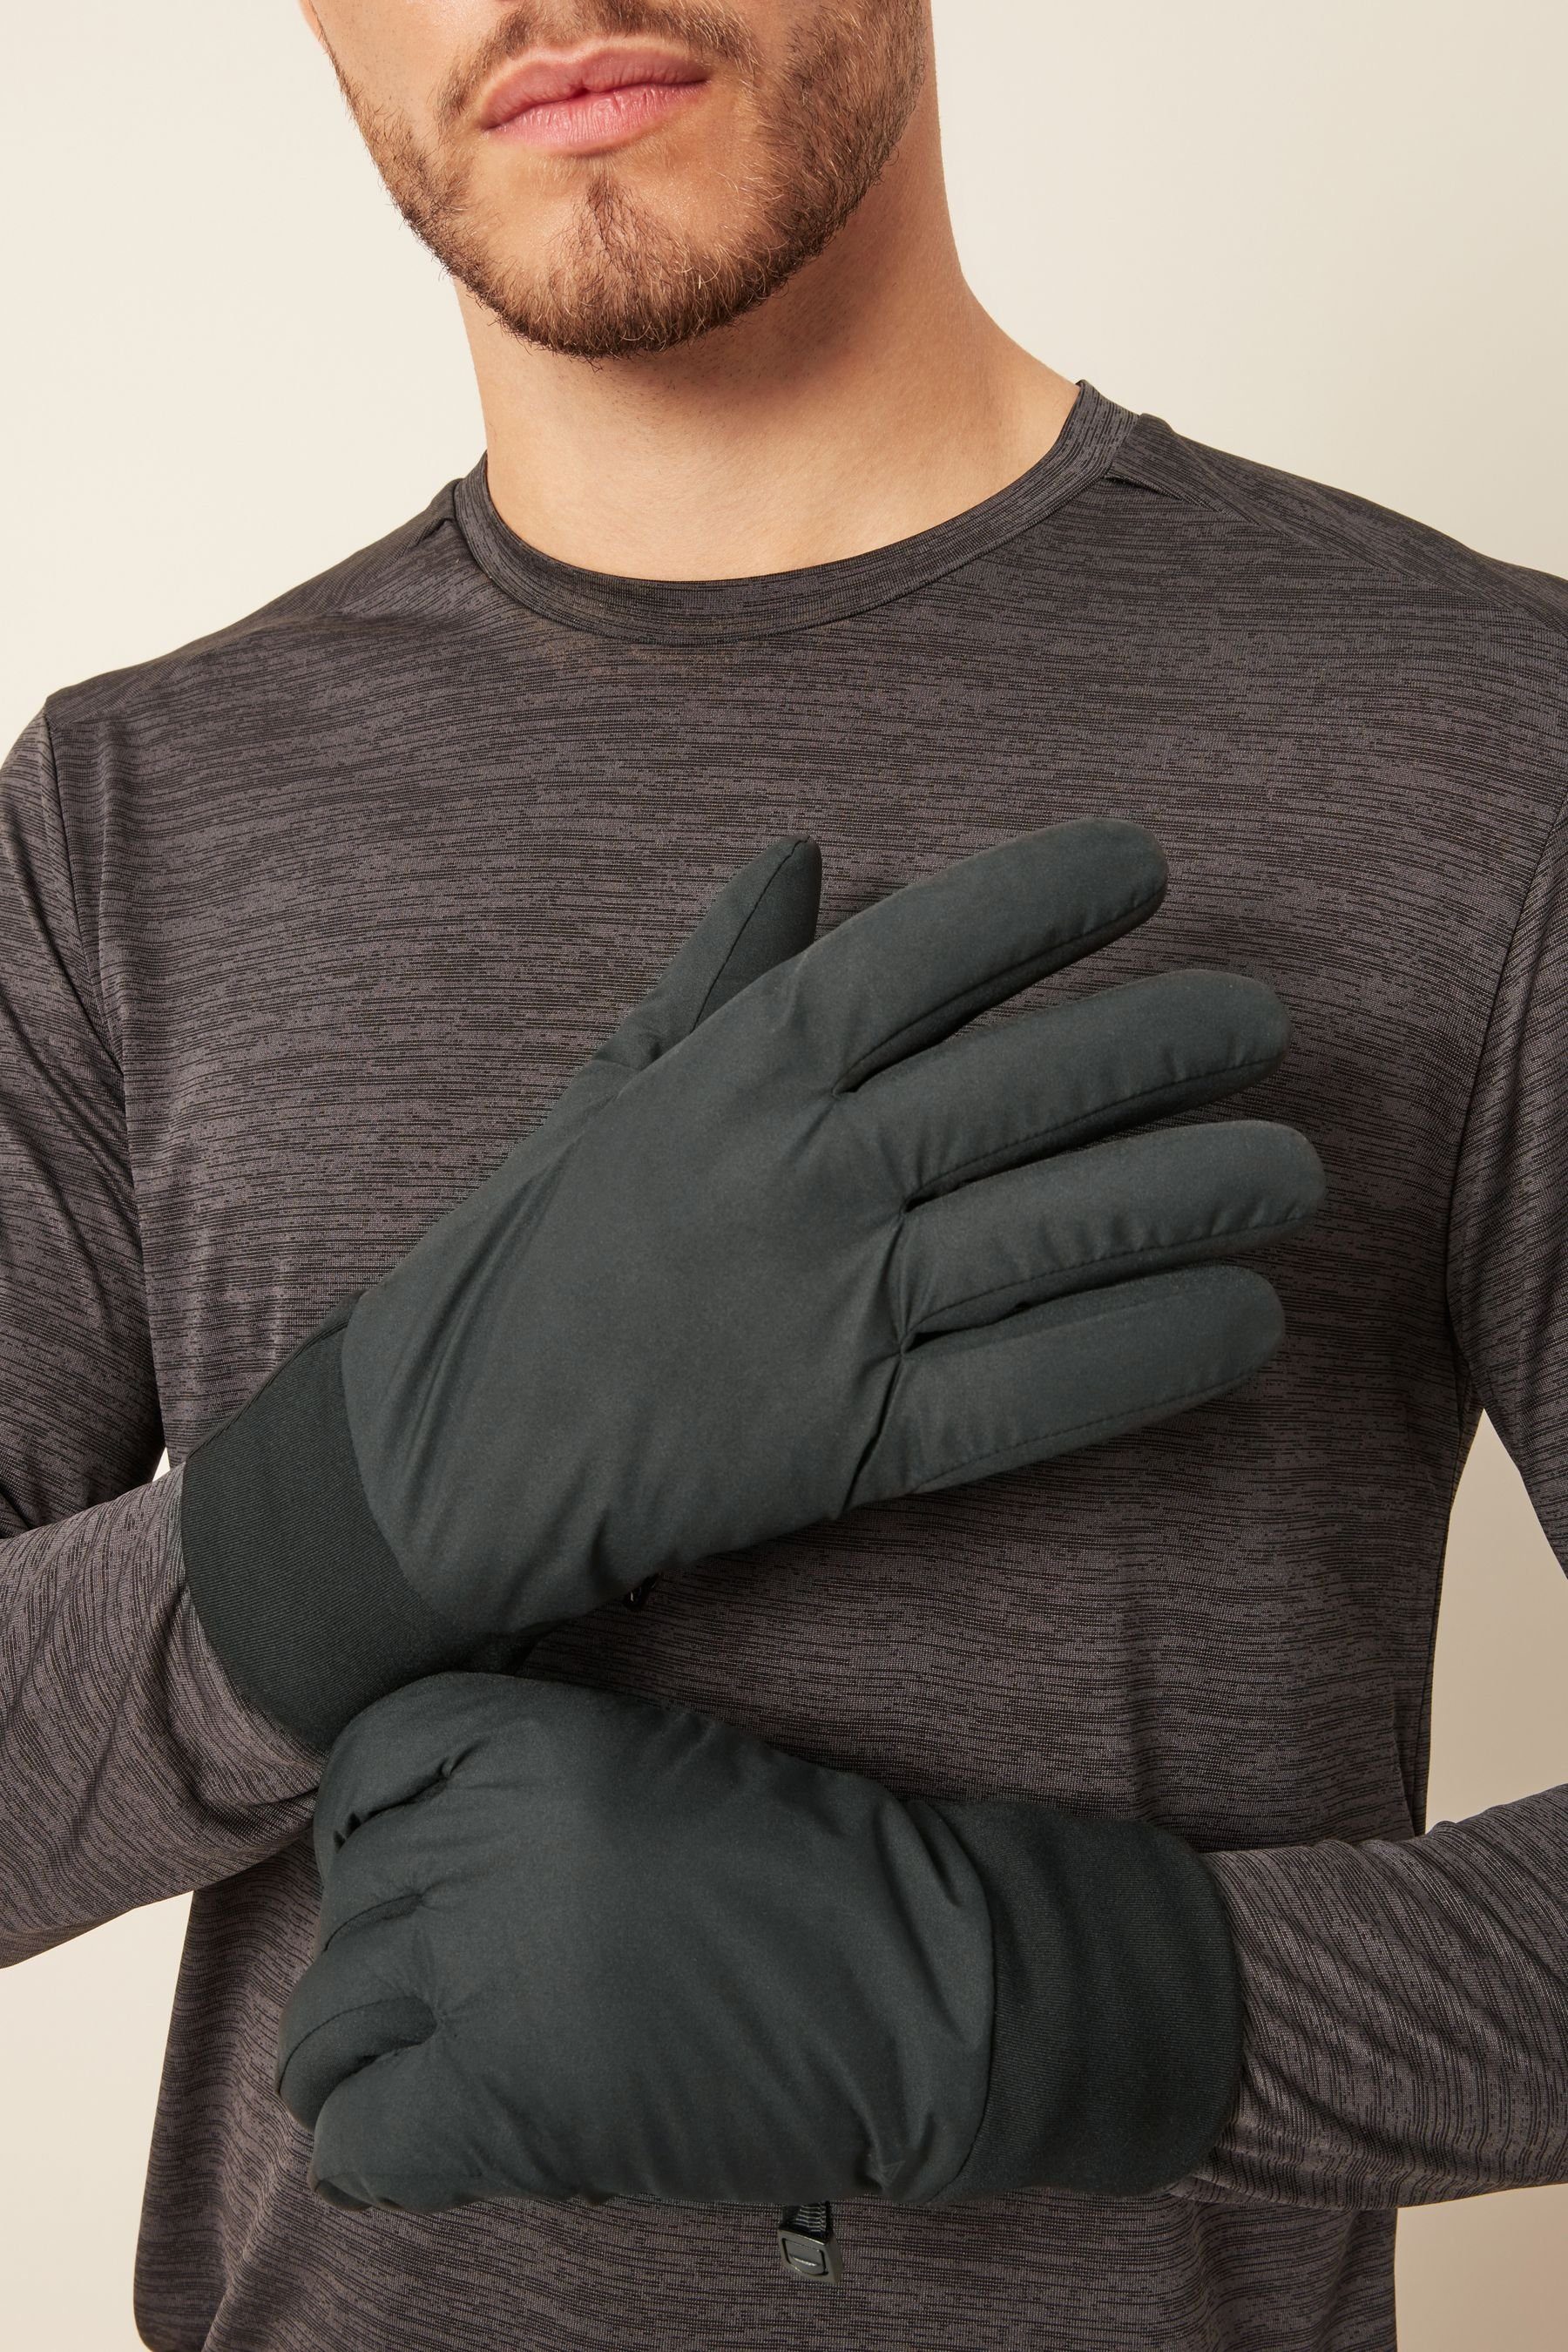 Strickhandschuhe Handschuhe Next Leichte Active